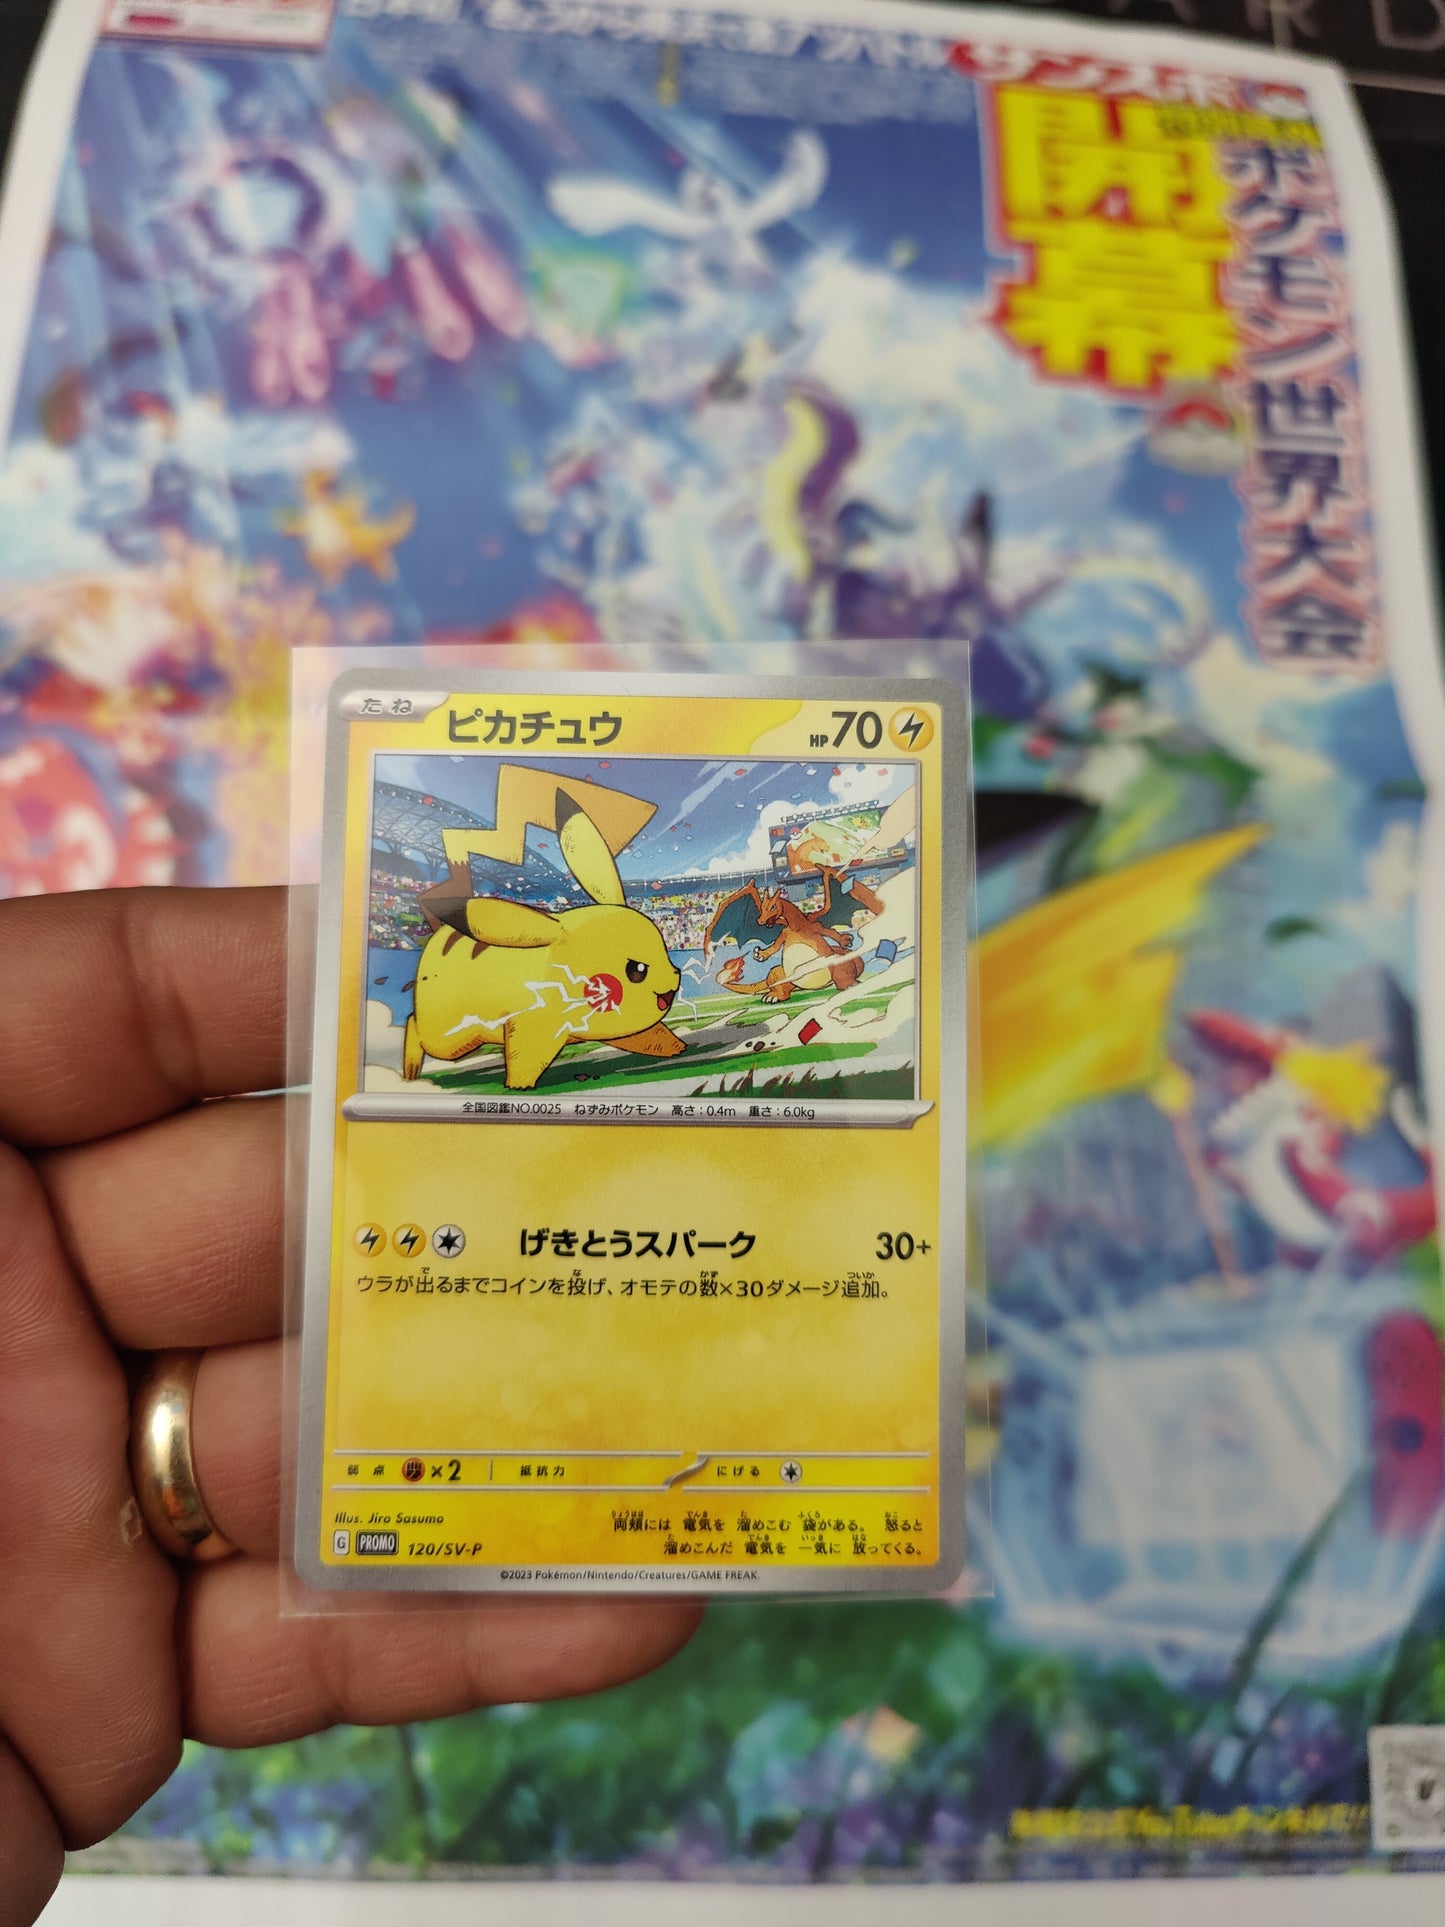 1 Pikachu Promo card + 1 Newspaper